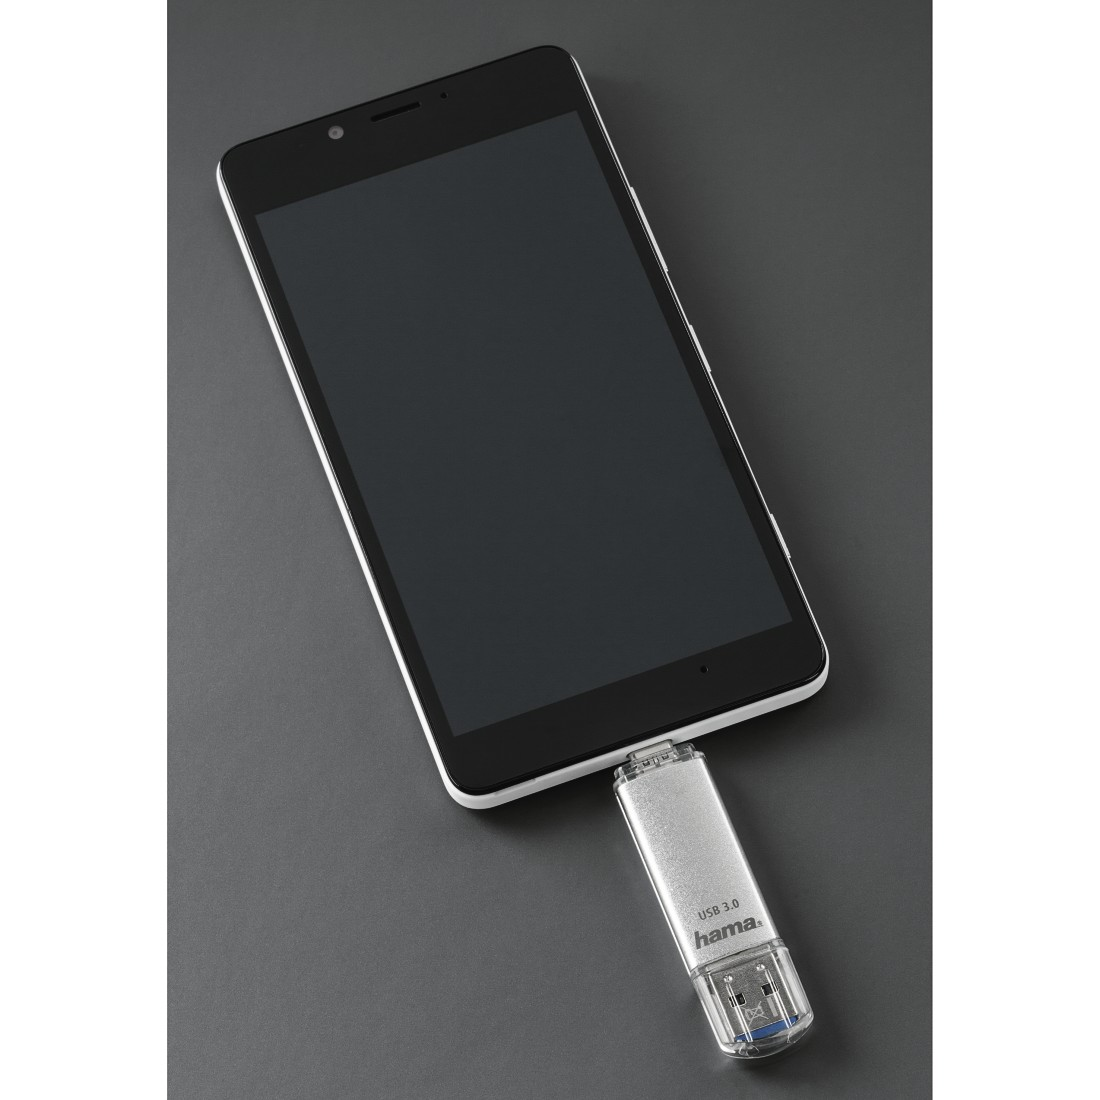 C-Laeta 40 64 GB, Silber MB/s, USB-Stick, HAMA